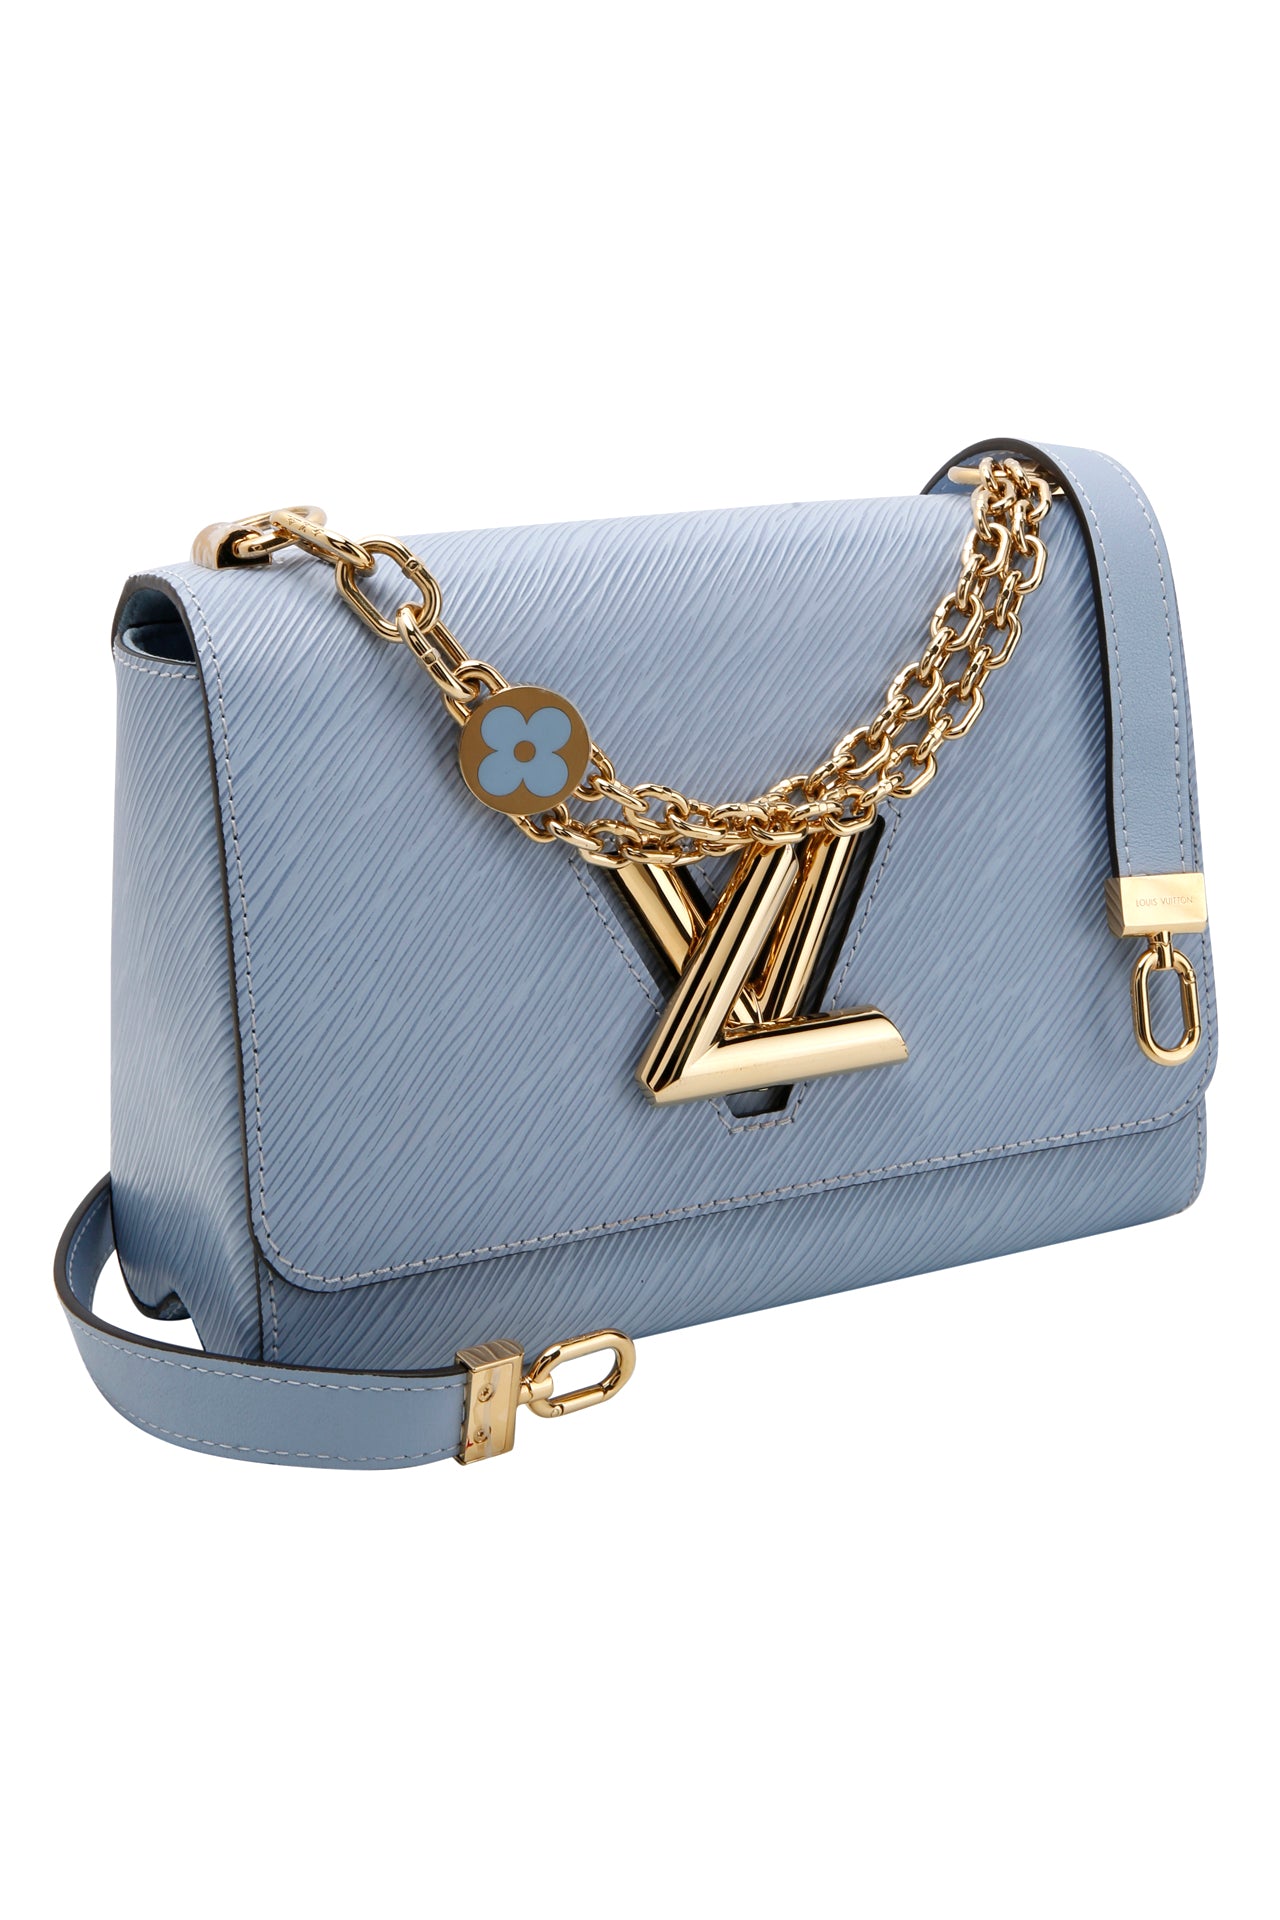 Louis Vuitton Epi Leather Twist MM Bag Blue